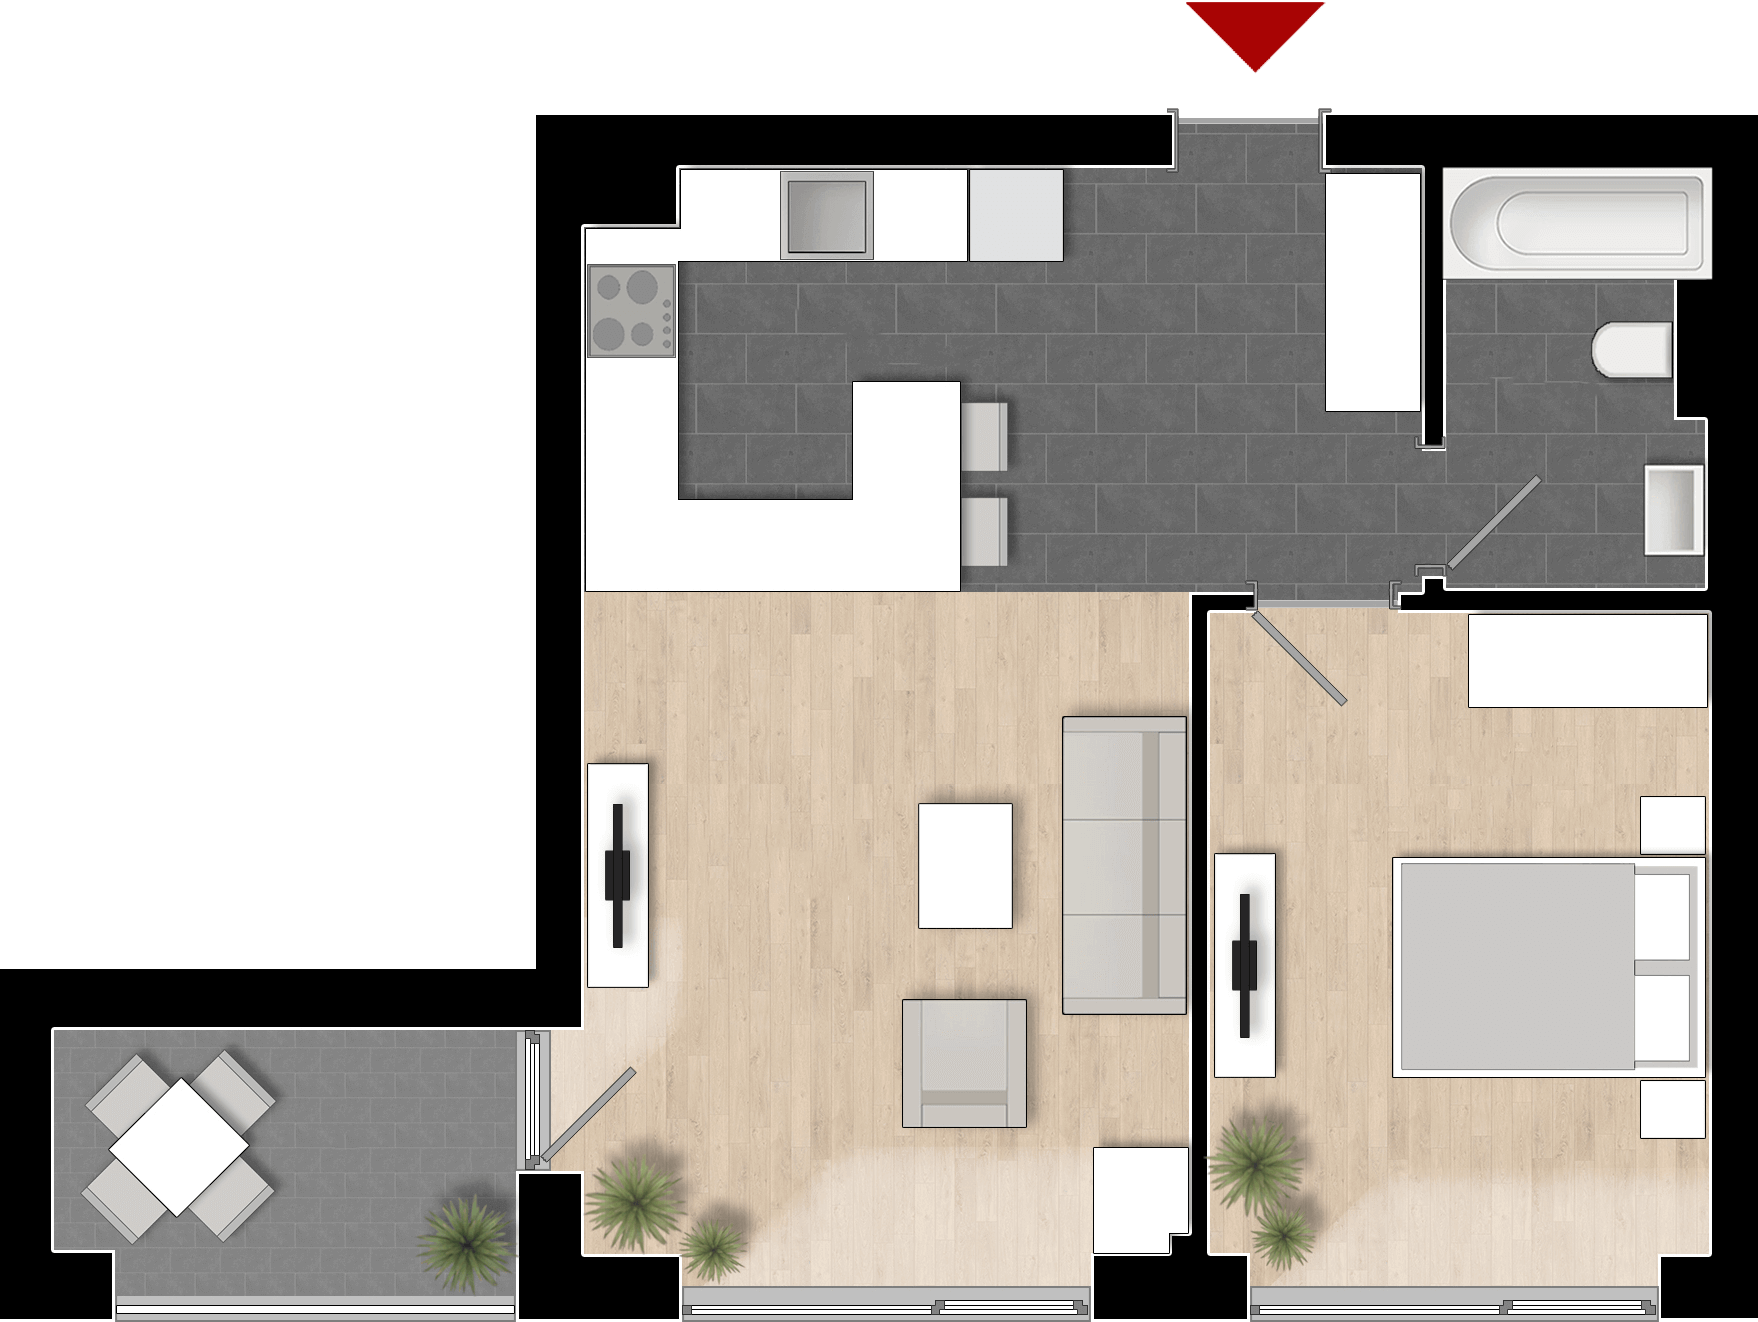  Apartament 1008, Tip de apartament 1A cu 2 camere 